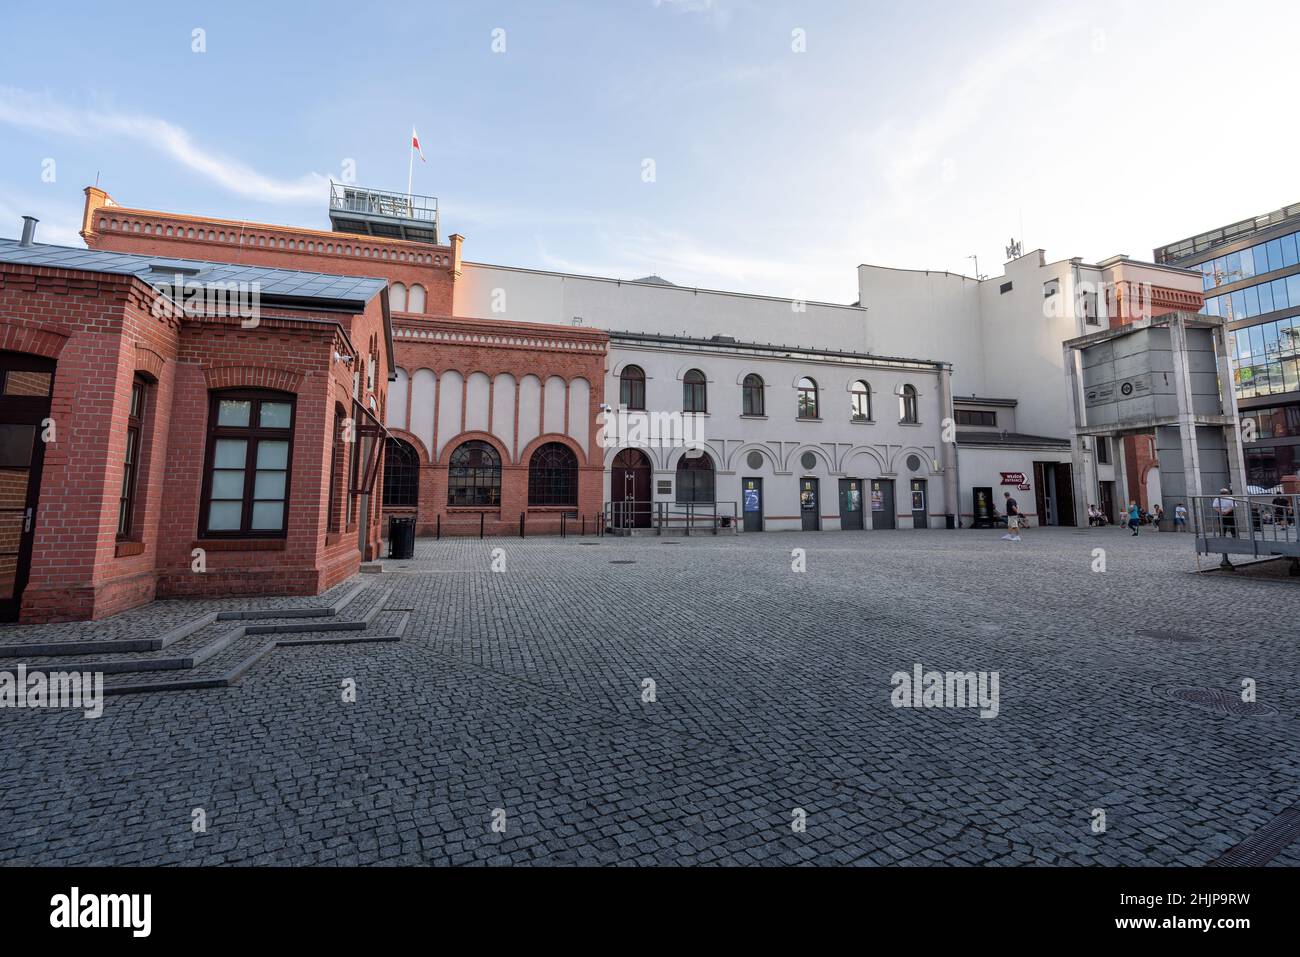 Warsaw Uprising Museum - Warsaw, Poland Stock Photo